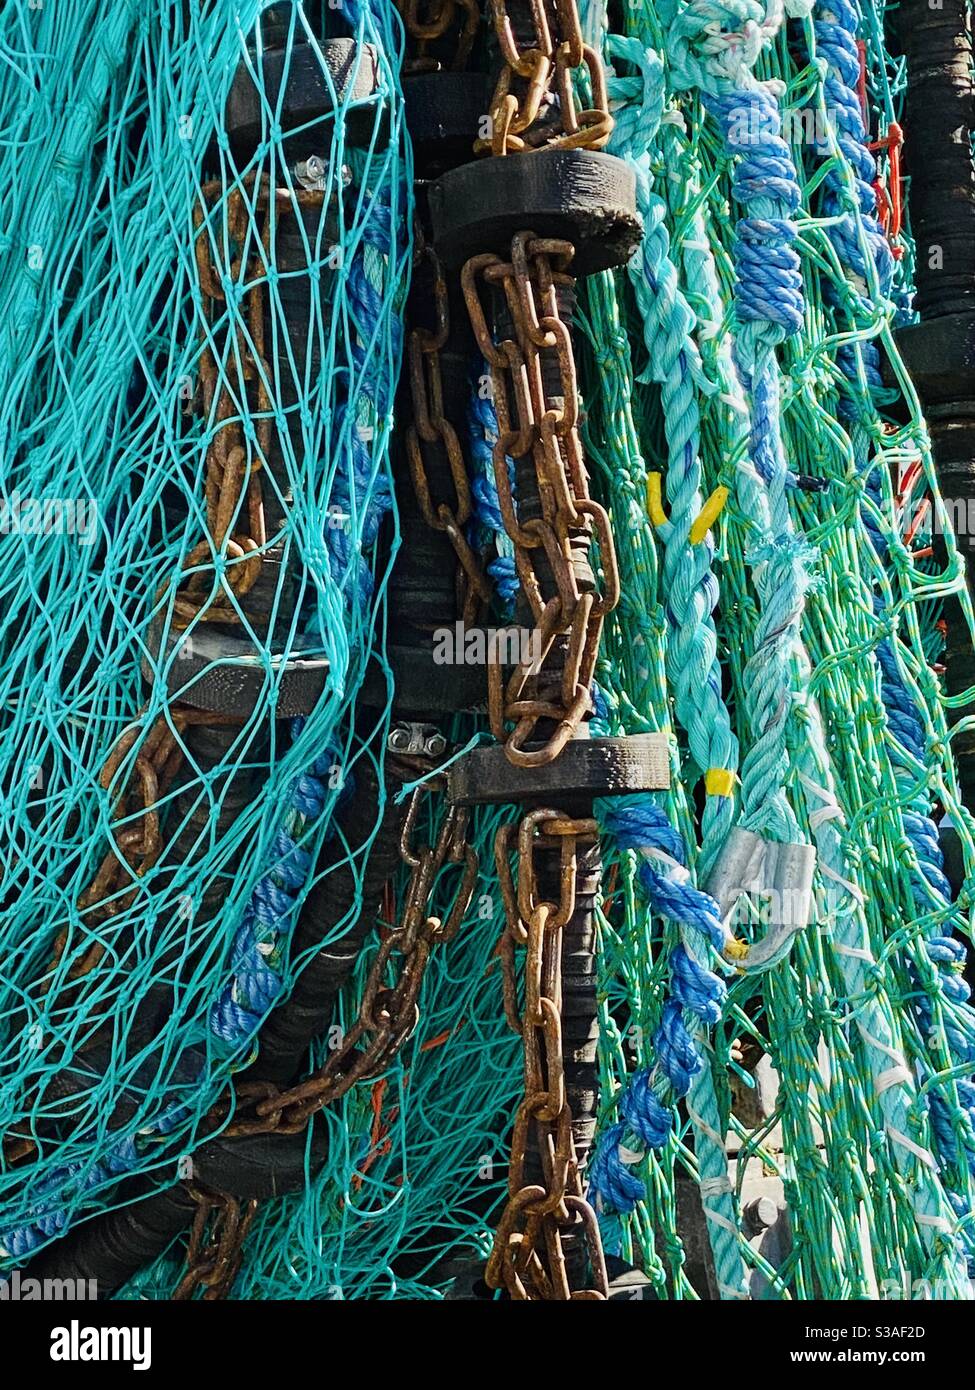 https://c8.alamy.com/comp/S3AF2D/fishermans-bets-on-a-roller-multicoloured-trawler-nets-S3AF2D.jpg